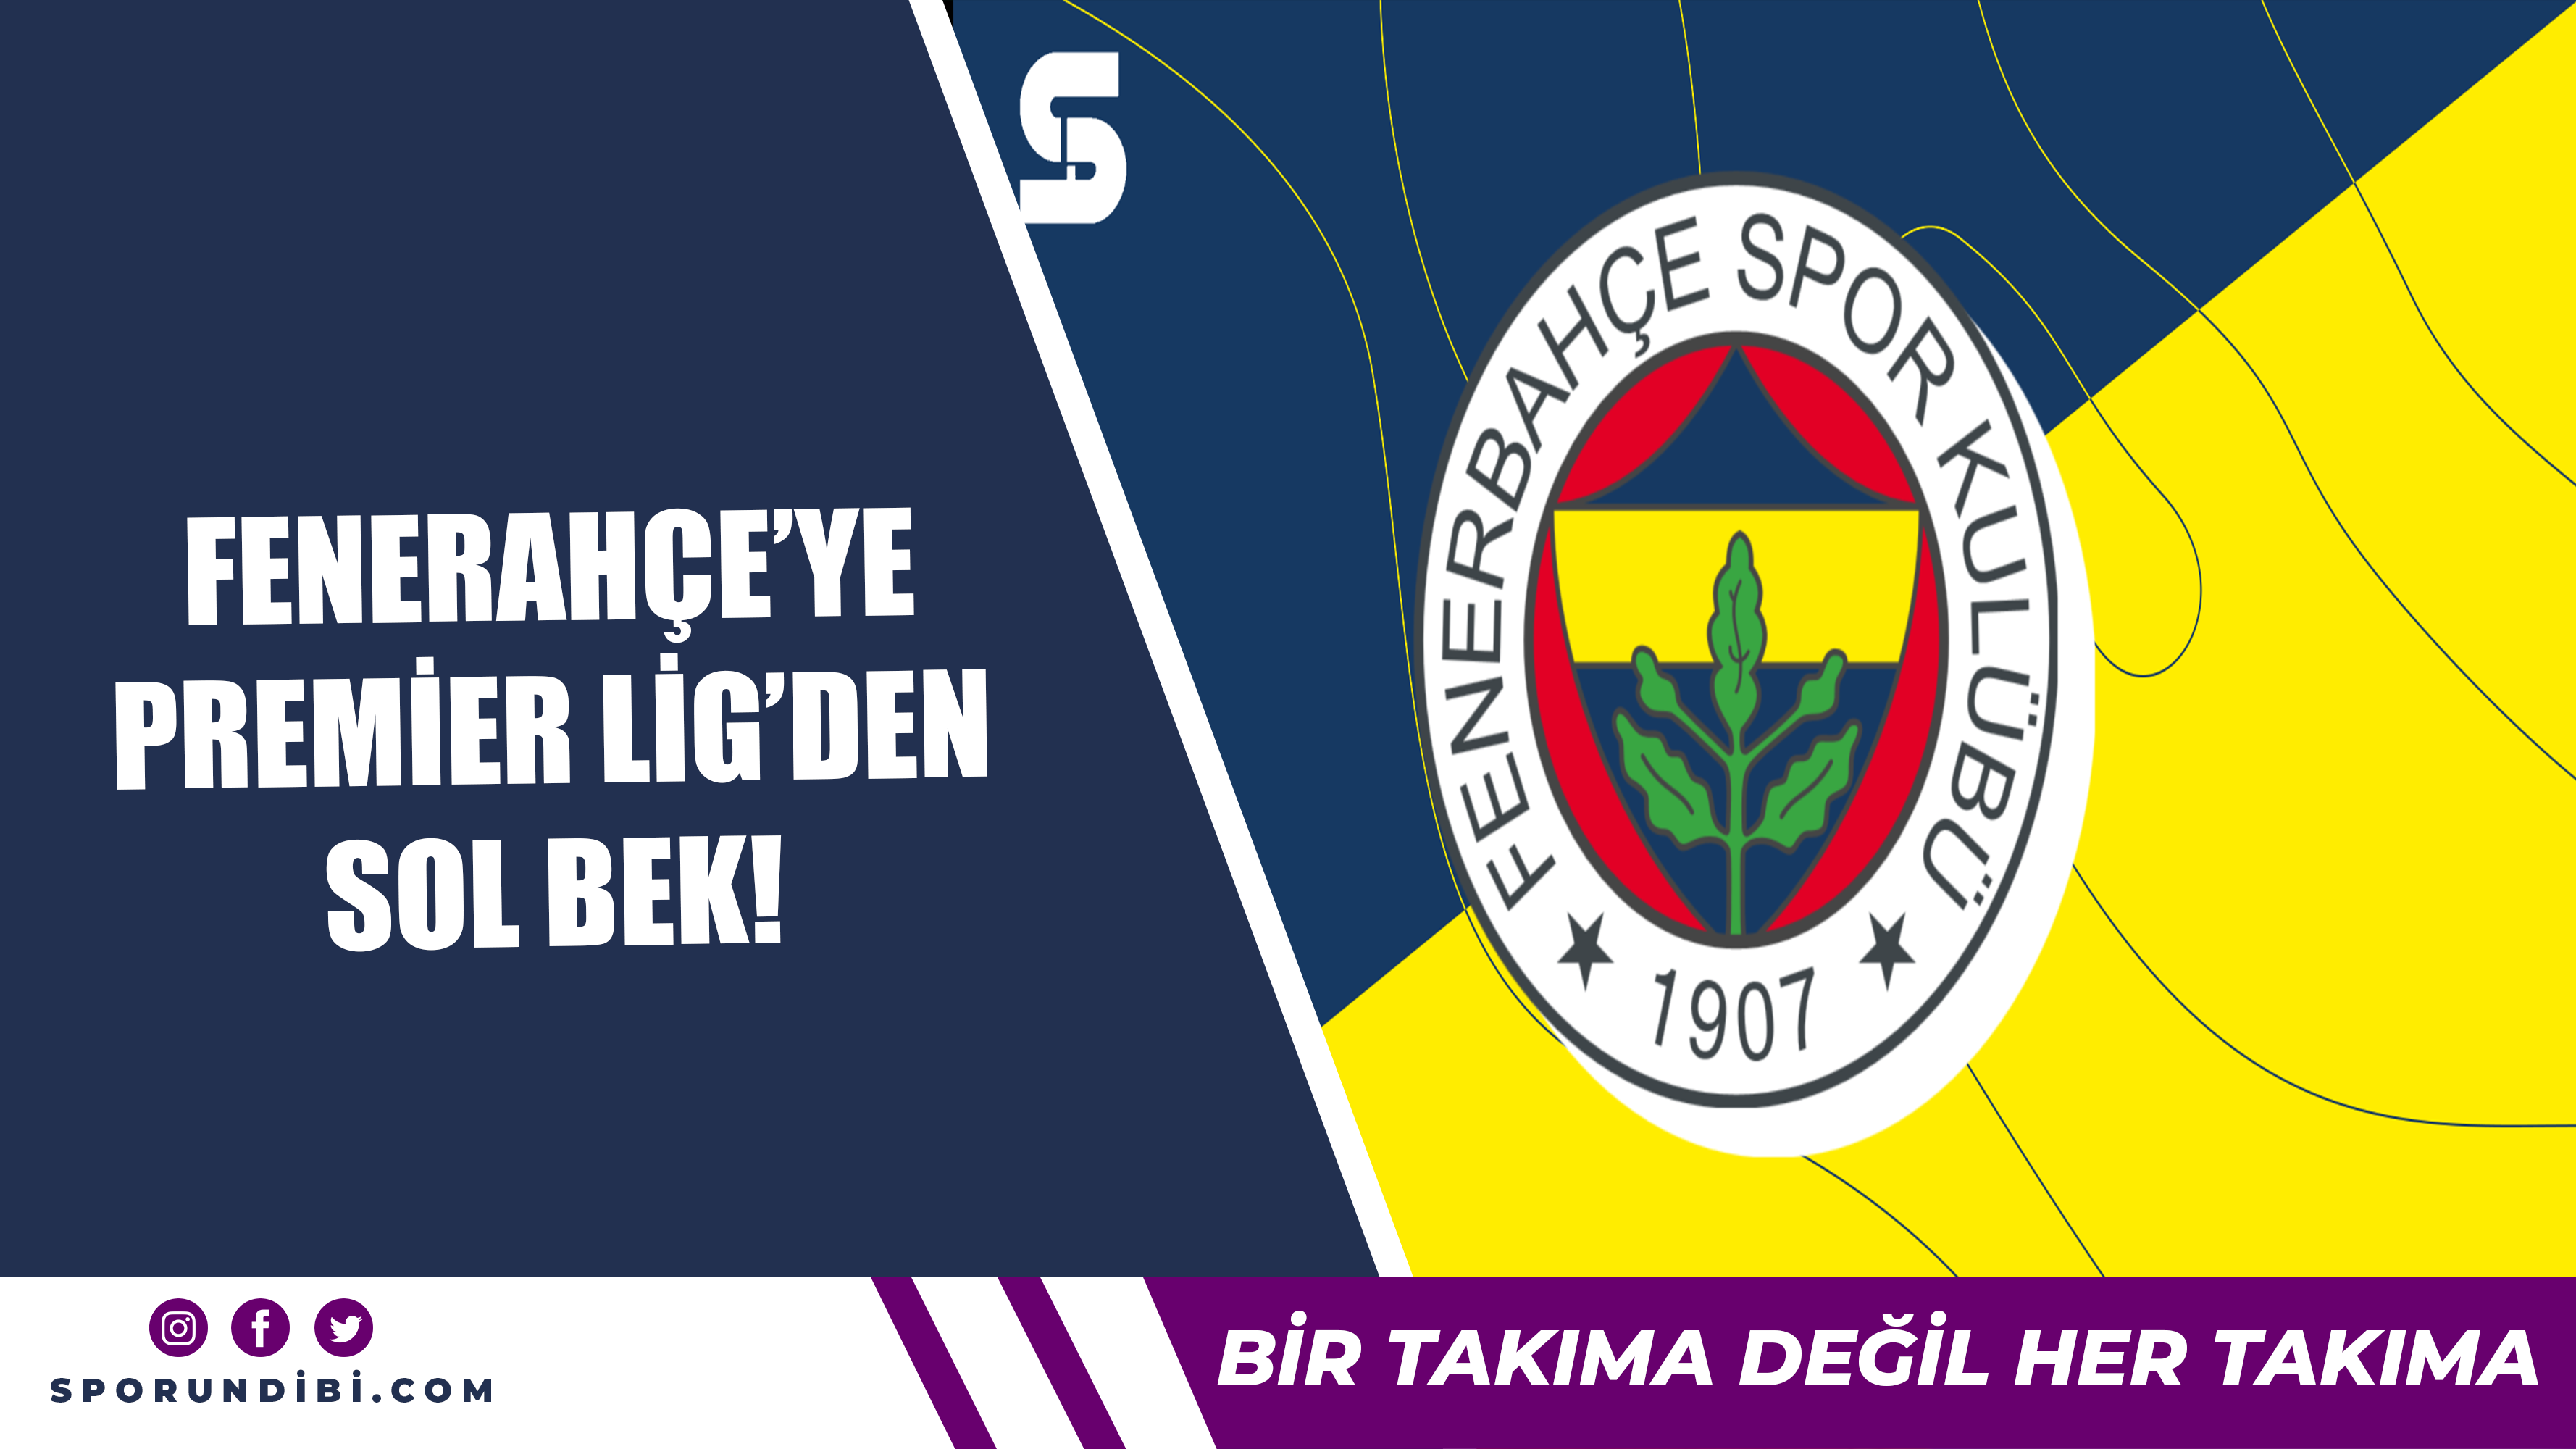 Fenerbahçe'ye Premier Lig'den sol bek!